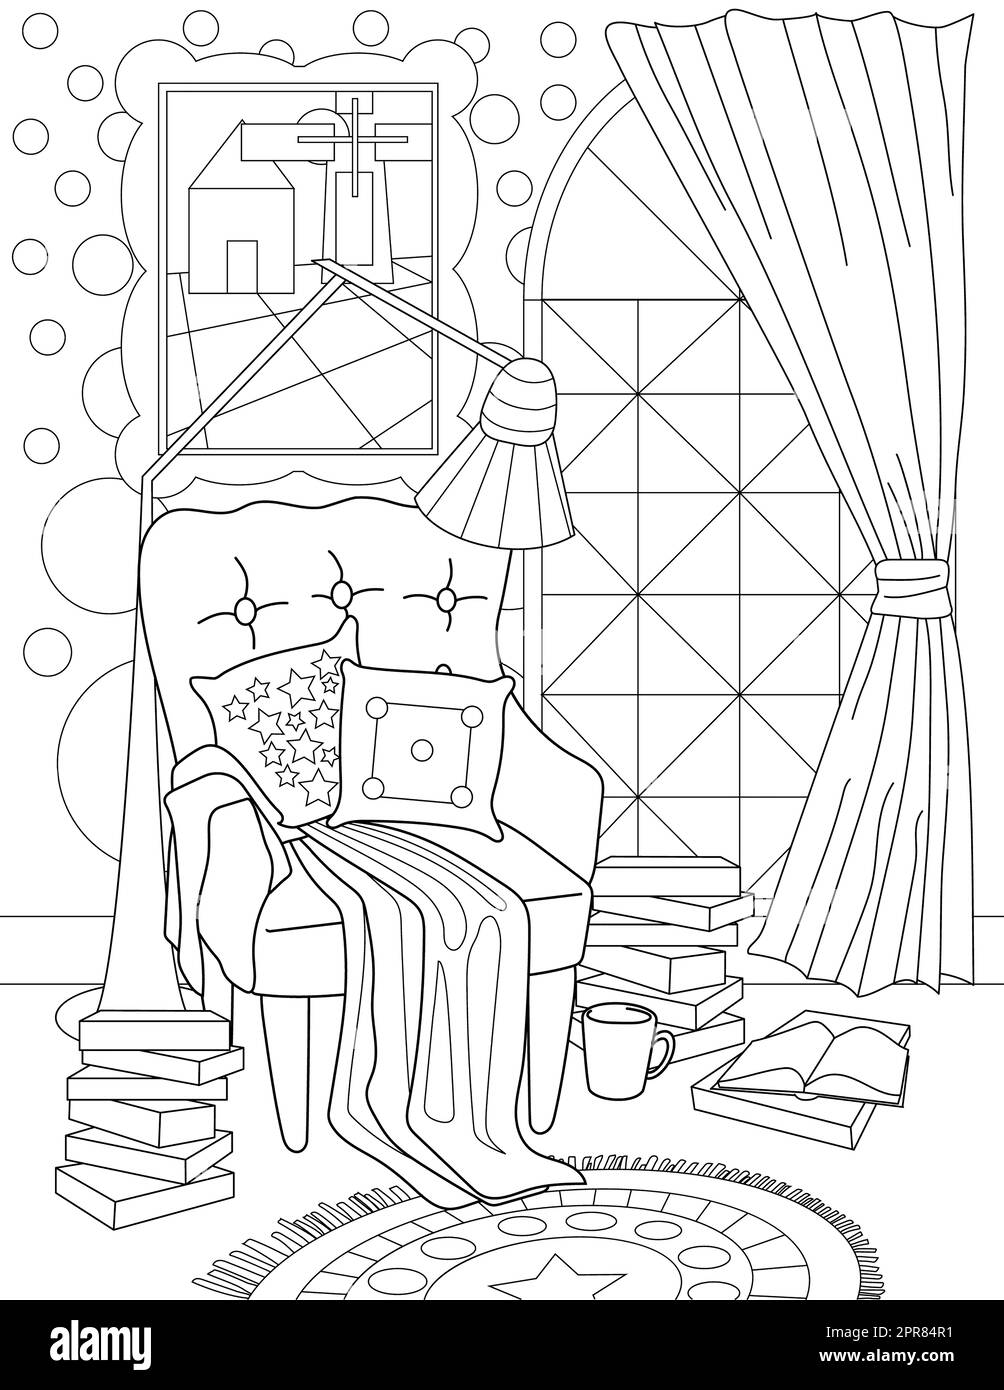 Coloriage page avec fauteuil confortable avec oreillers et couverture. Banque D'Images